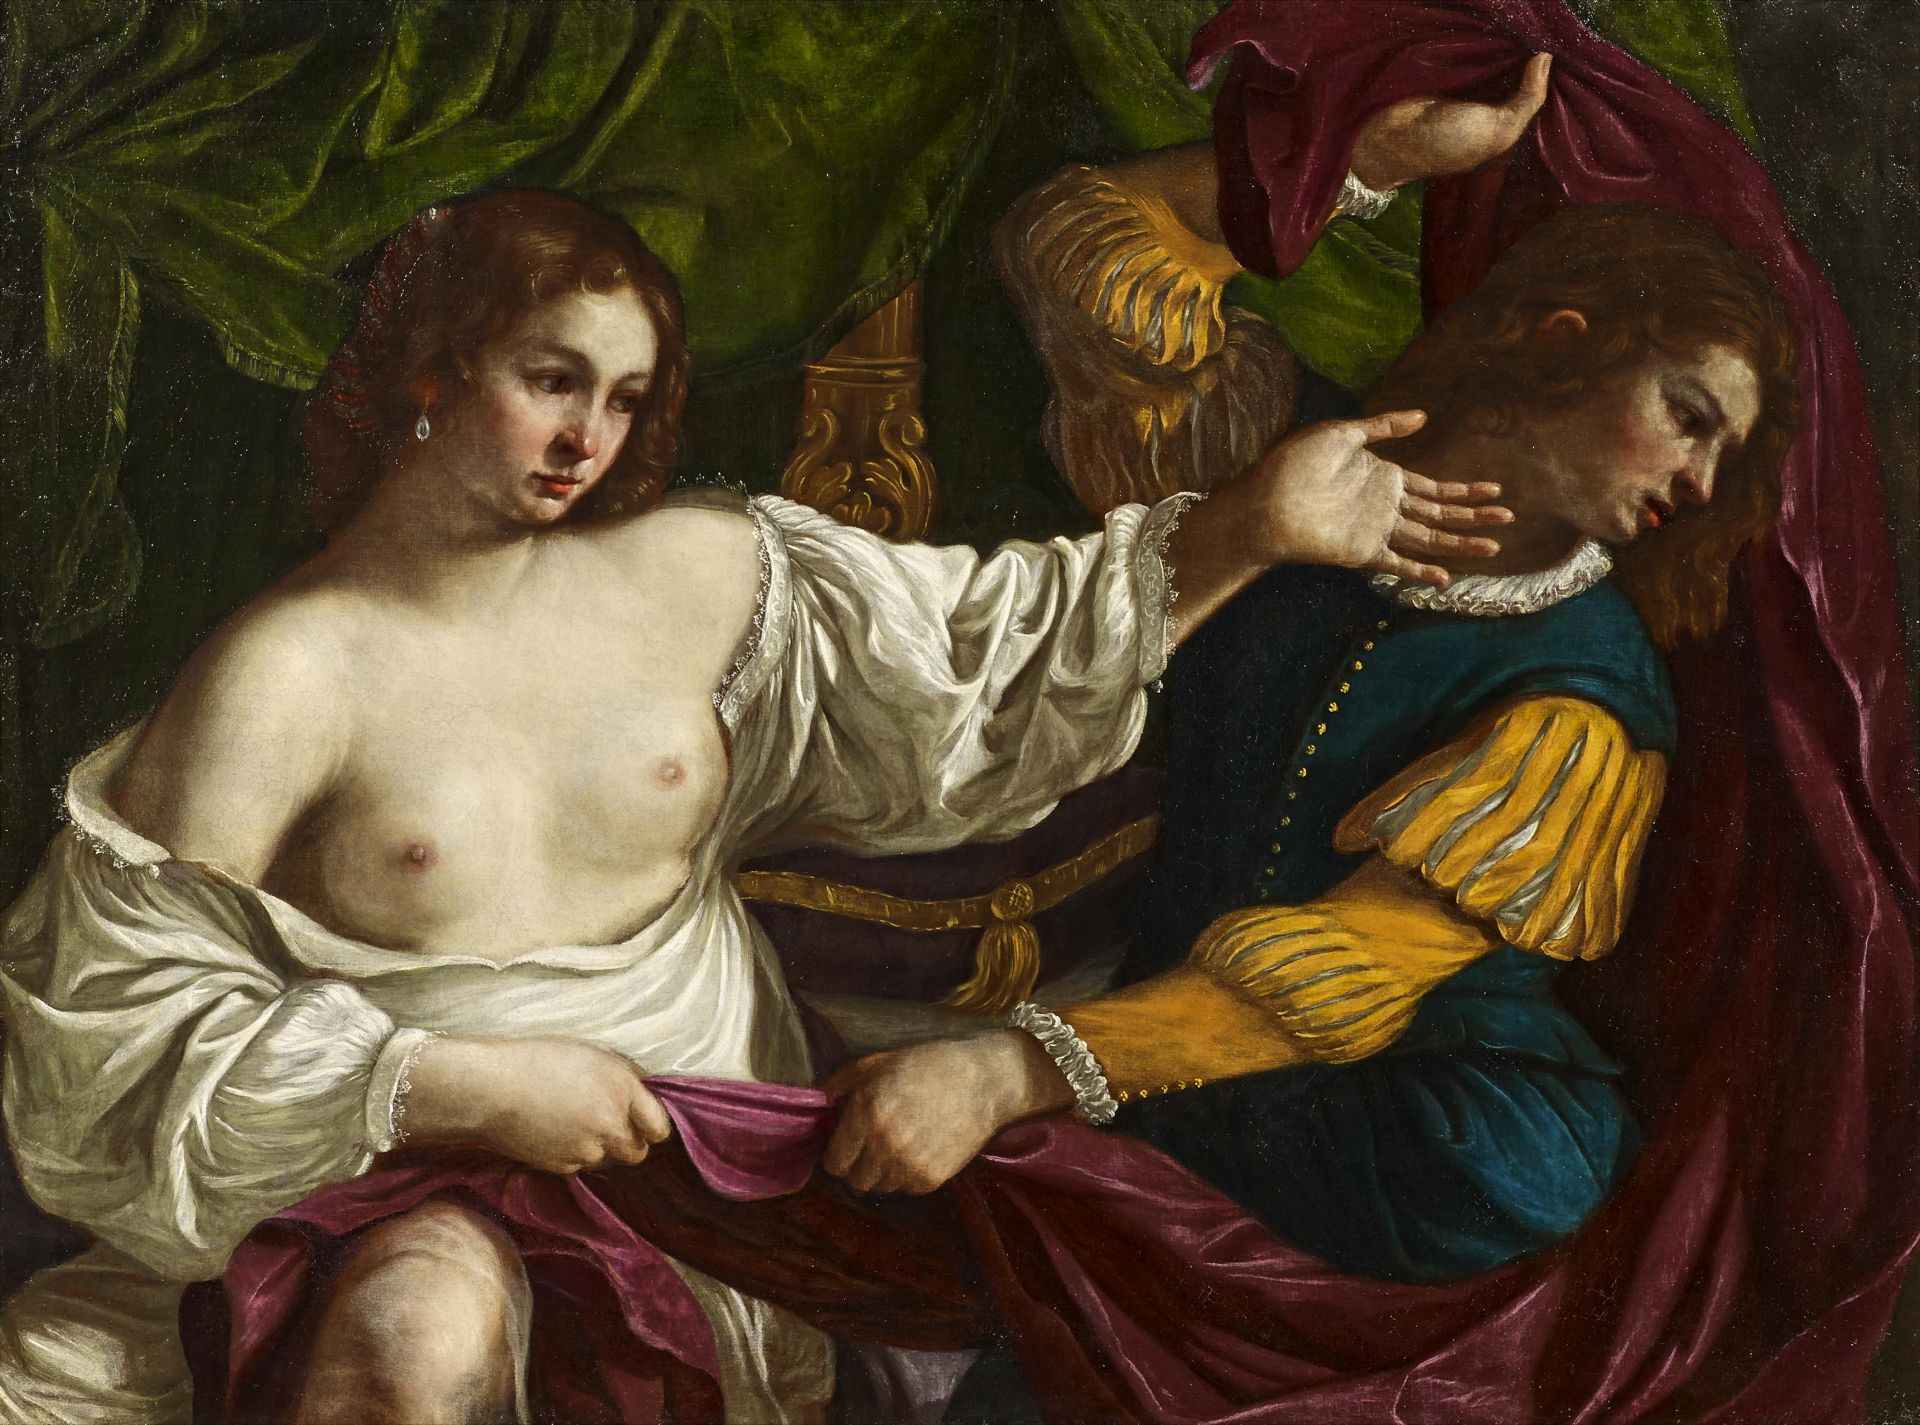 GENNARI, BARTOLOMEObefore 1594 Cento - 1661 BolognaTitle: Joseph and Potiphar's Wife. Technique: Oil